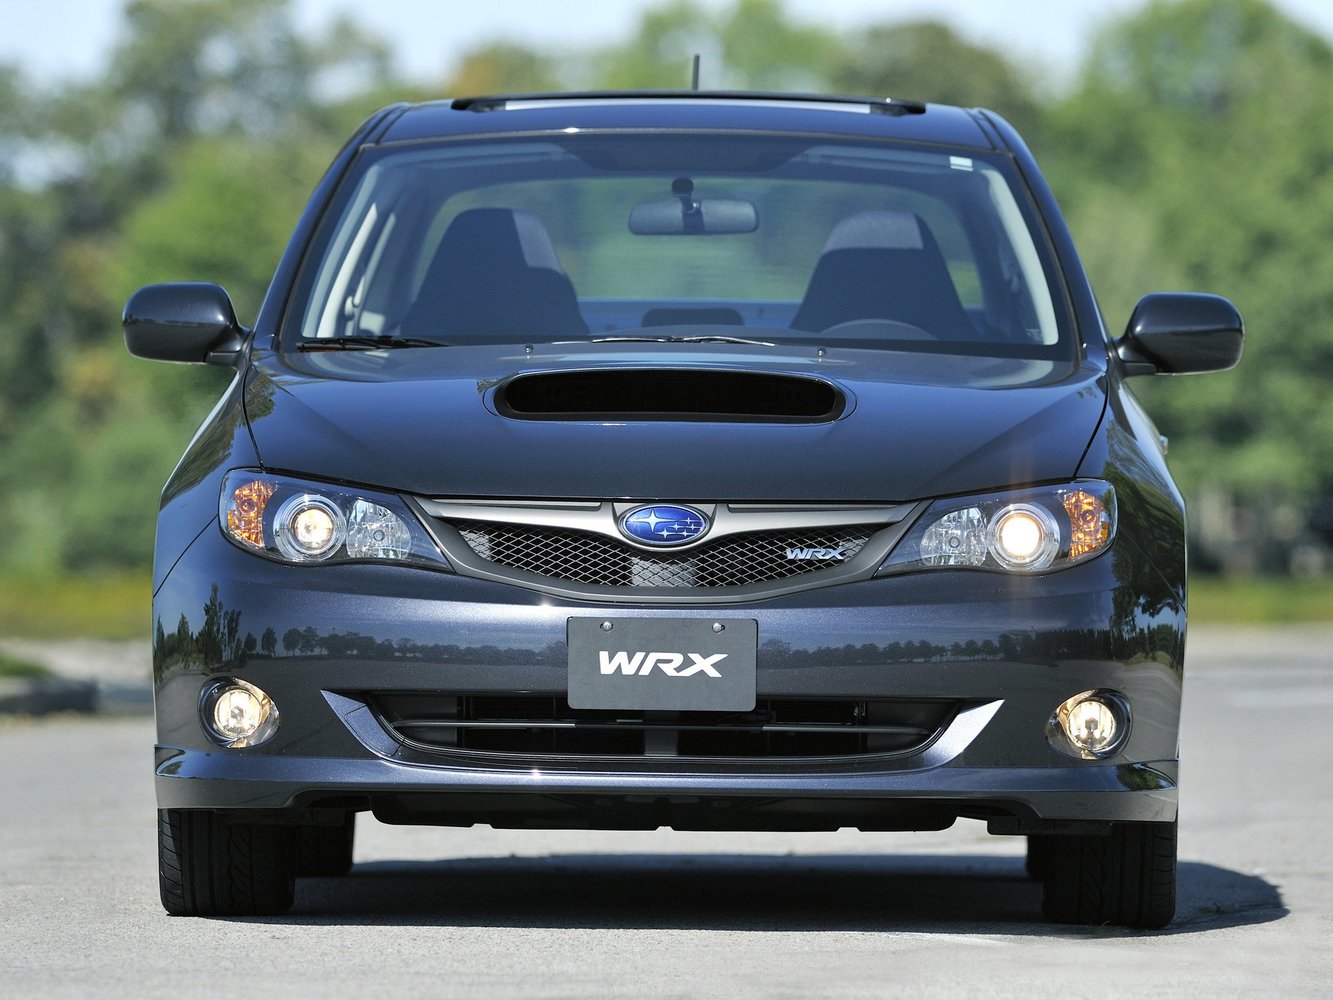 седан Subaru Impreza WRX 2007 - 2011г выпуска модификация 2.5 MT (230 л.с.) 4×4